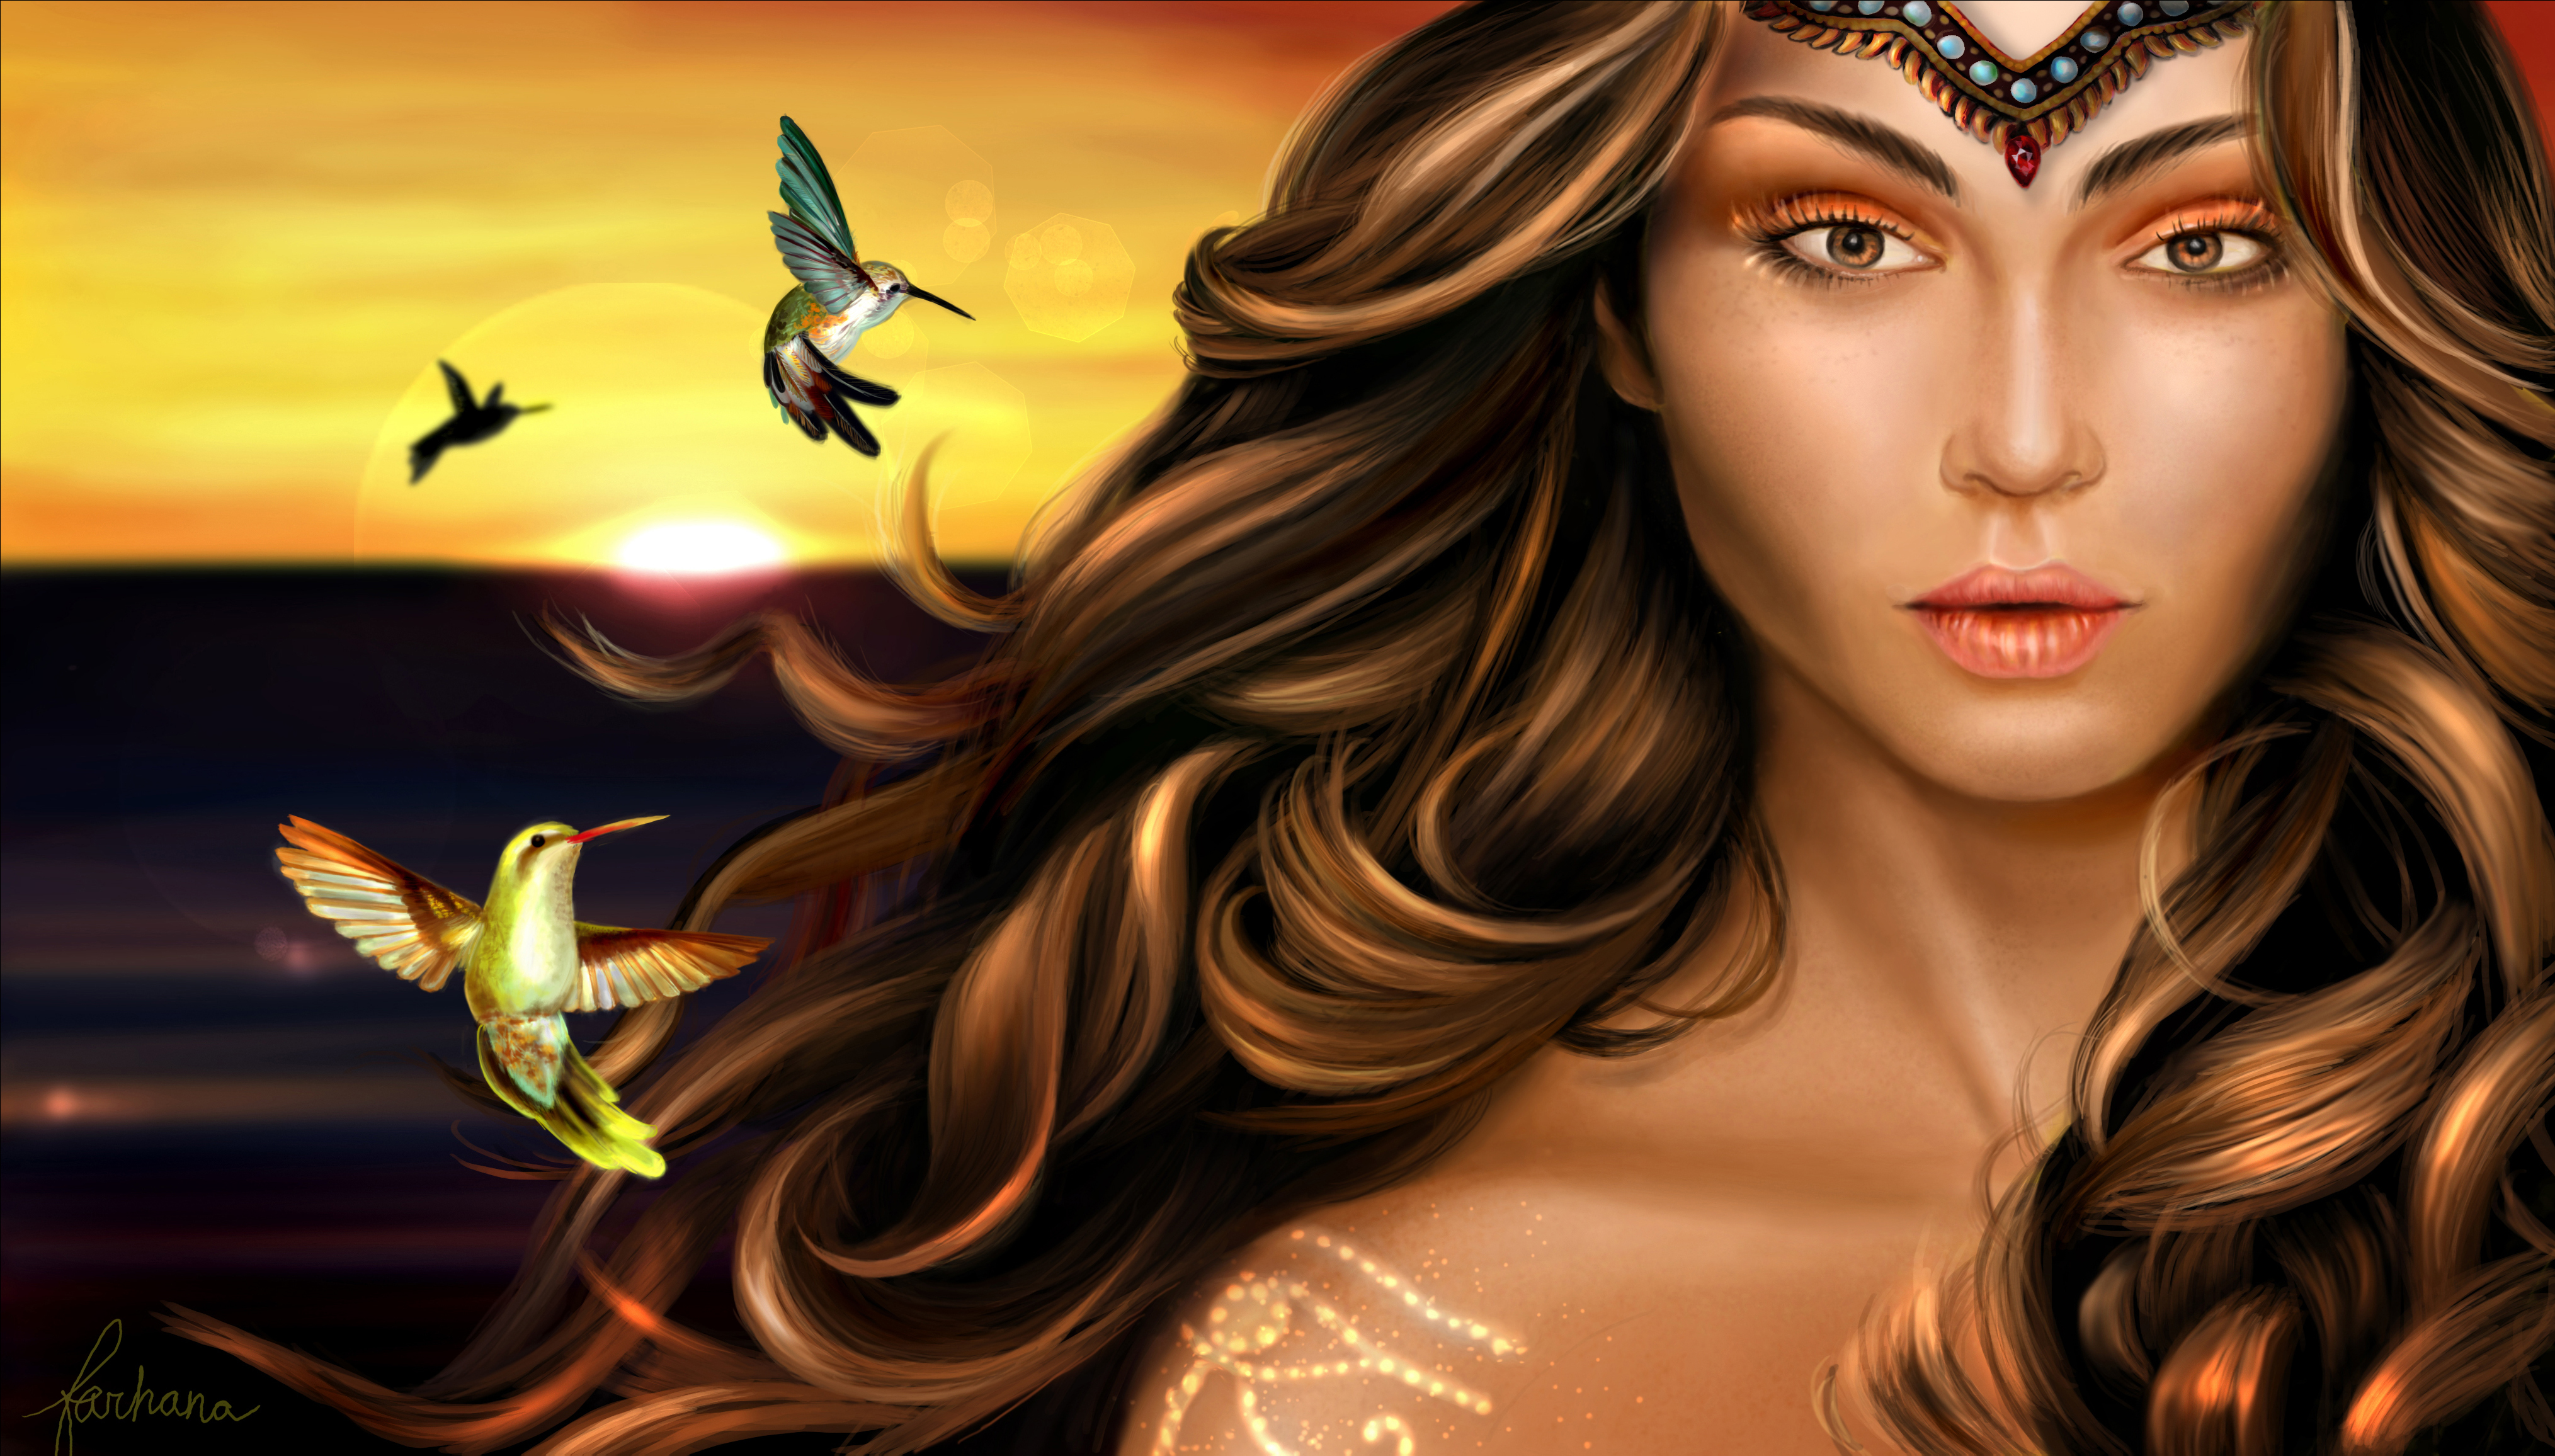 Isis: The Goddess of the Sun by Farhana Hossain